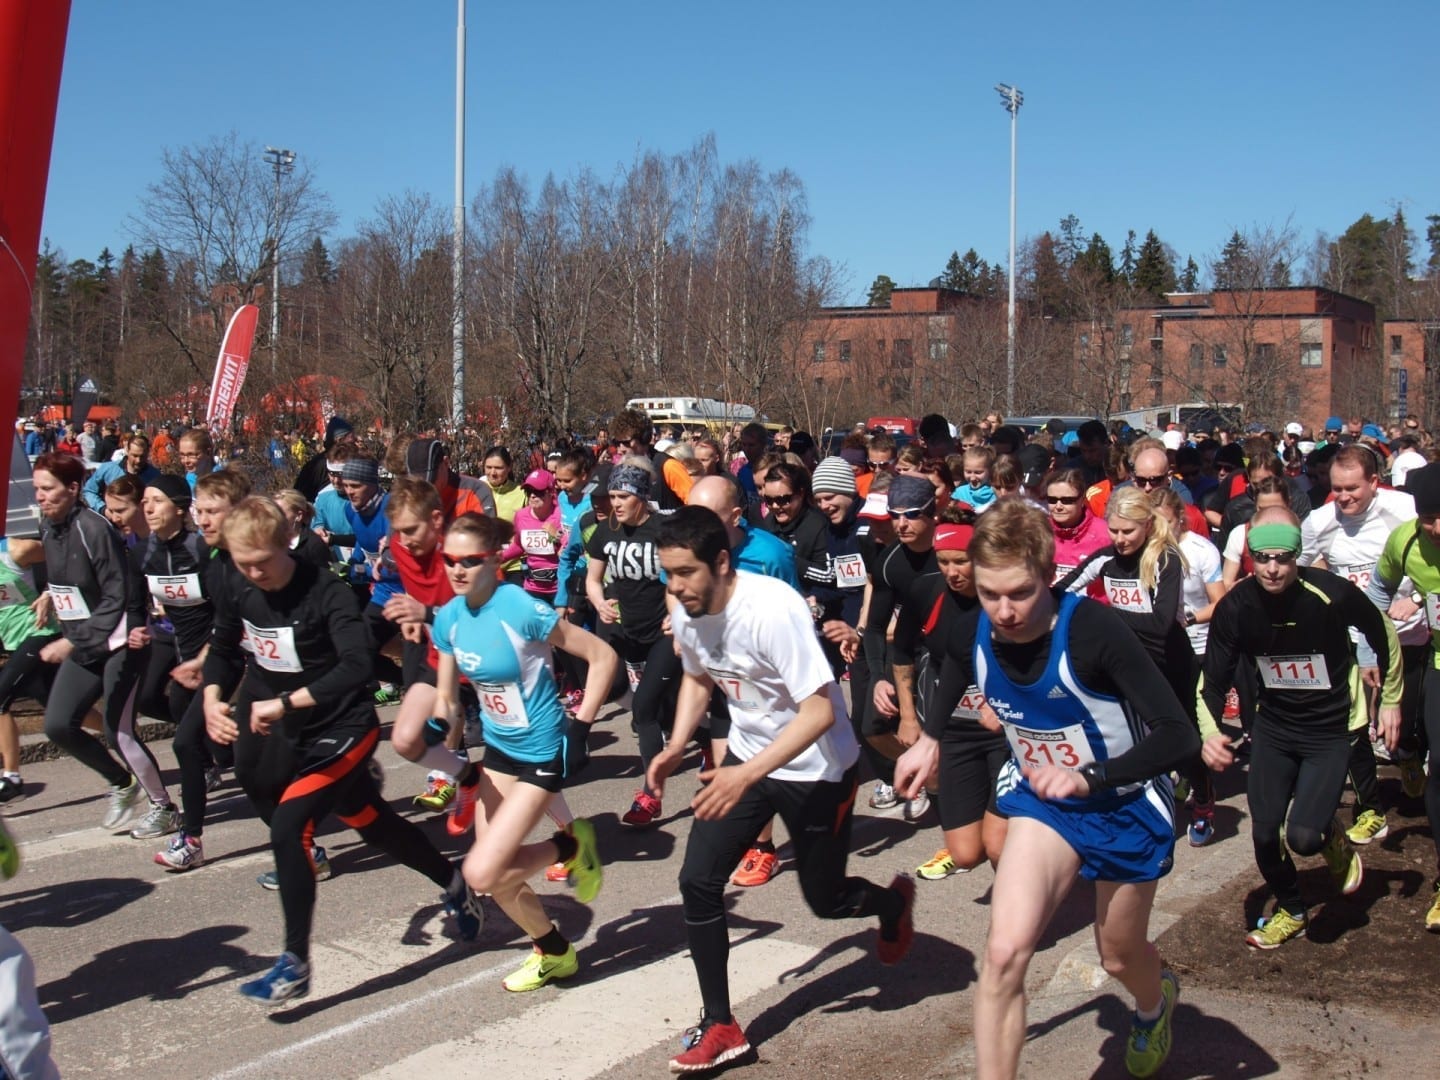 El comienzo del evento Länsiväyläjuoksu en 2013. La carrera corta comienza primero, la larga y la caminata comienza 15 minutos después. Esto tiene como objetivo Espoo Finlandia